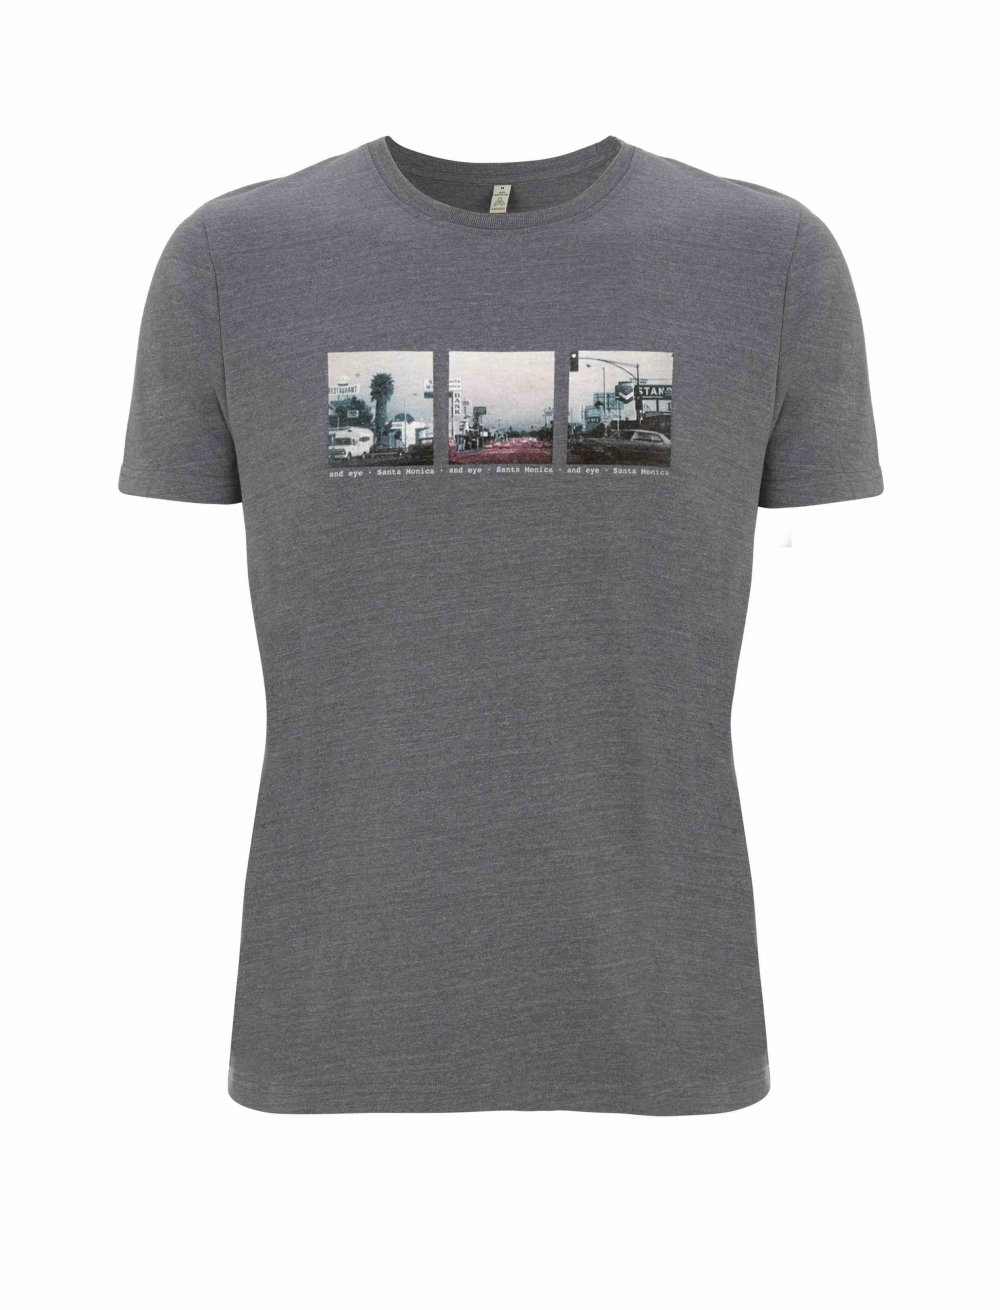 Tee-shirt recyclé avec une image vintage de Santa Monica